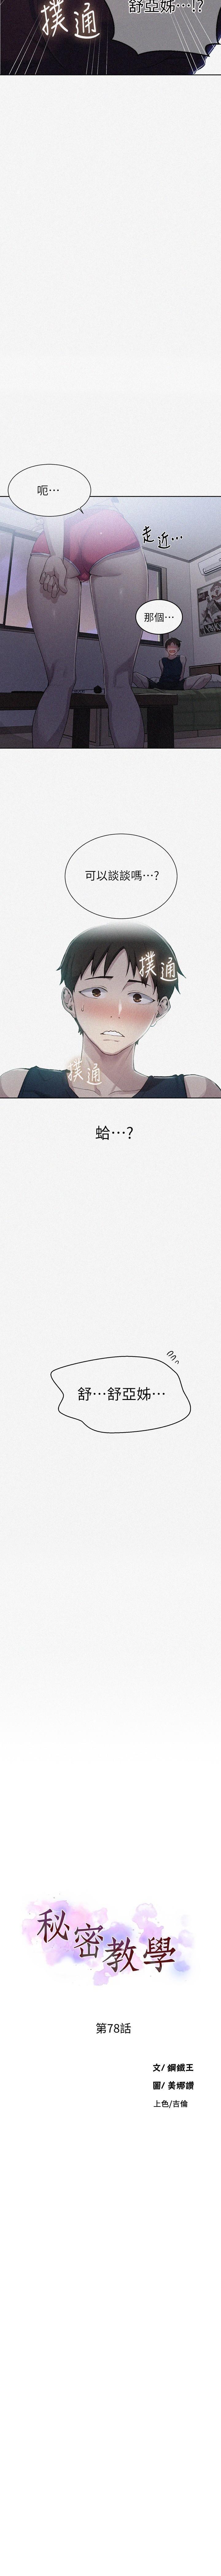 秘密教學 62-104 CHI mangaroshionline.blogspot.com 214